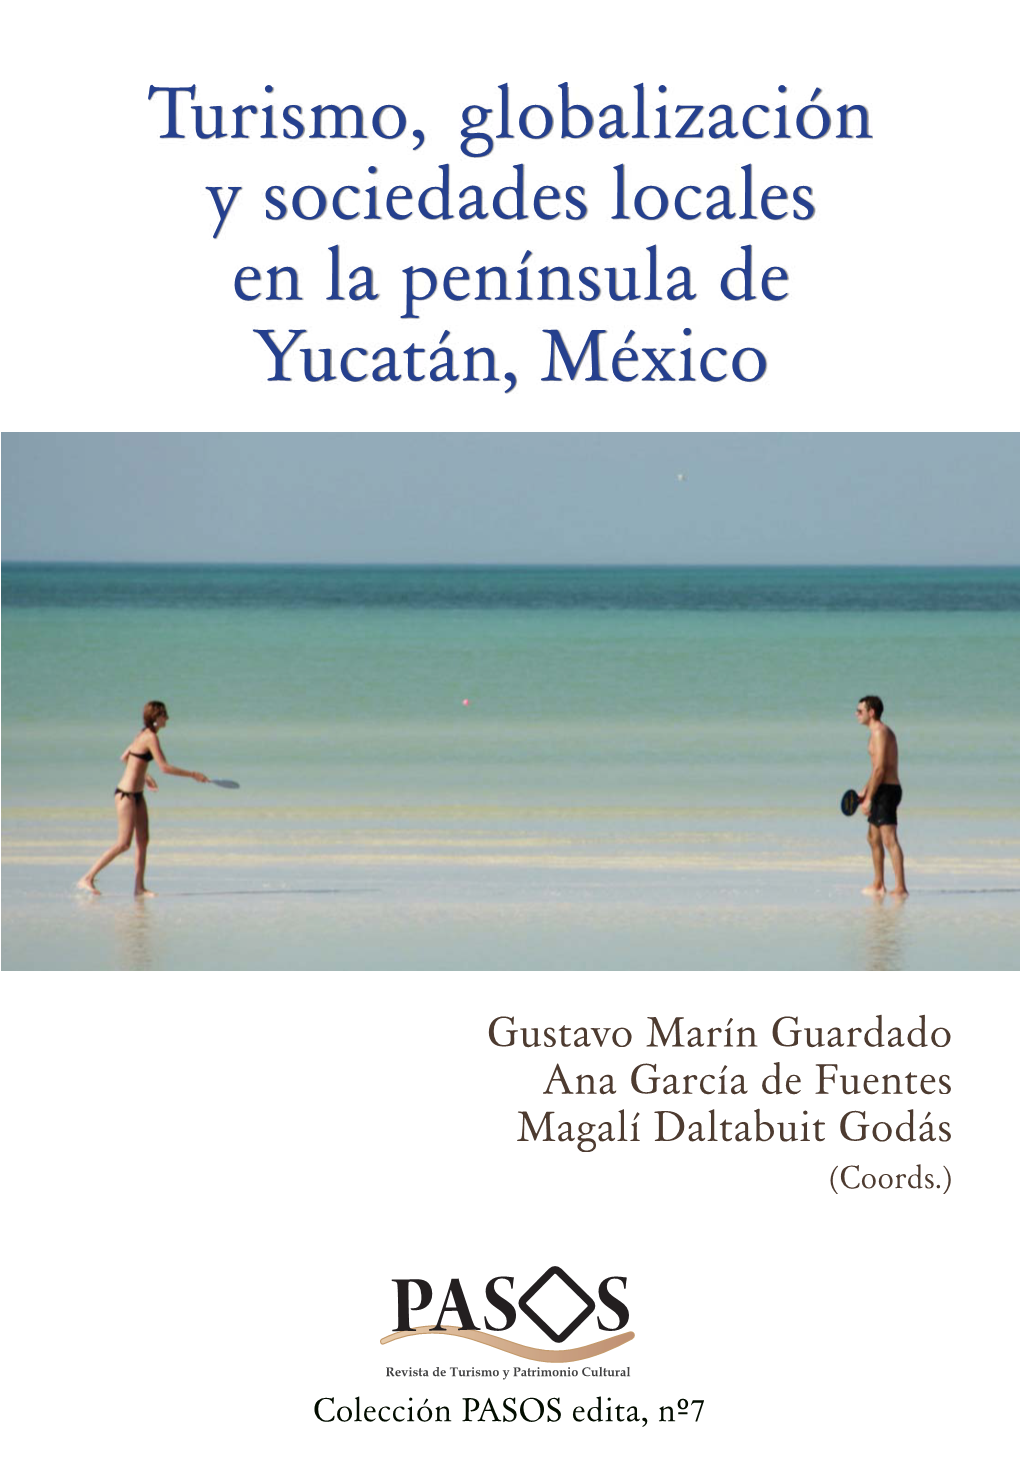 Turismo, Globalización Y Sociedades Locales En La Península De Yucatán, México